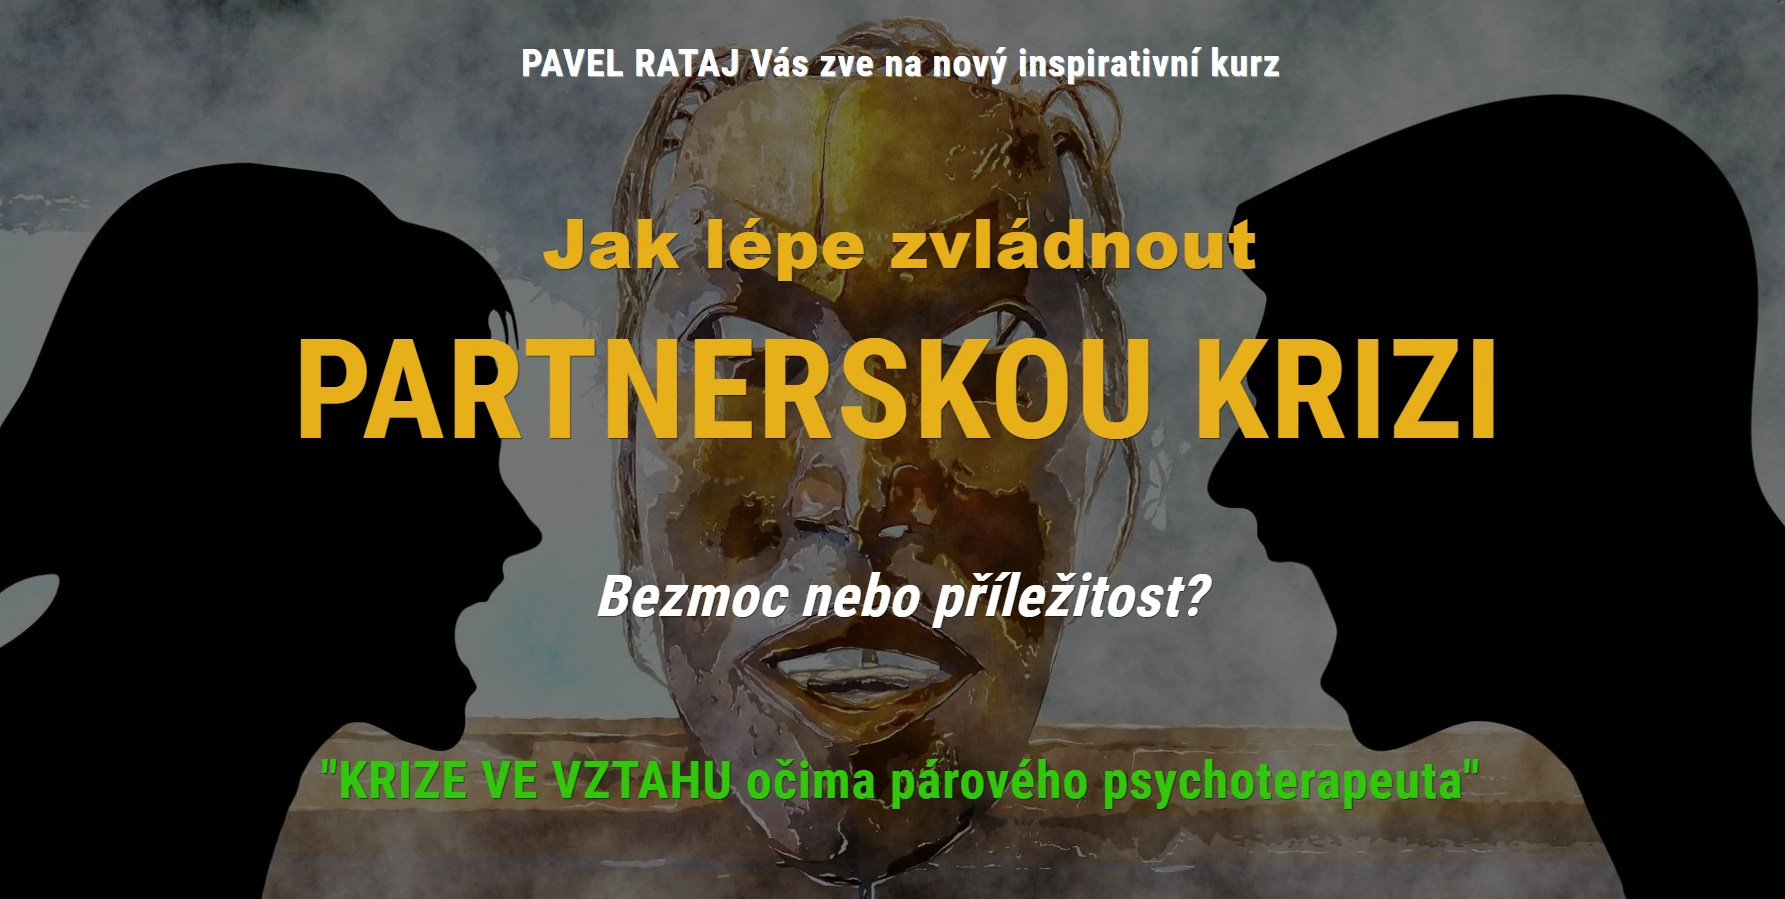 Jak zvládnout partnerskou krizi - www.pavelrataj.cz